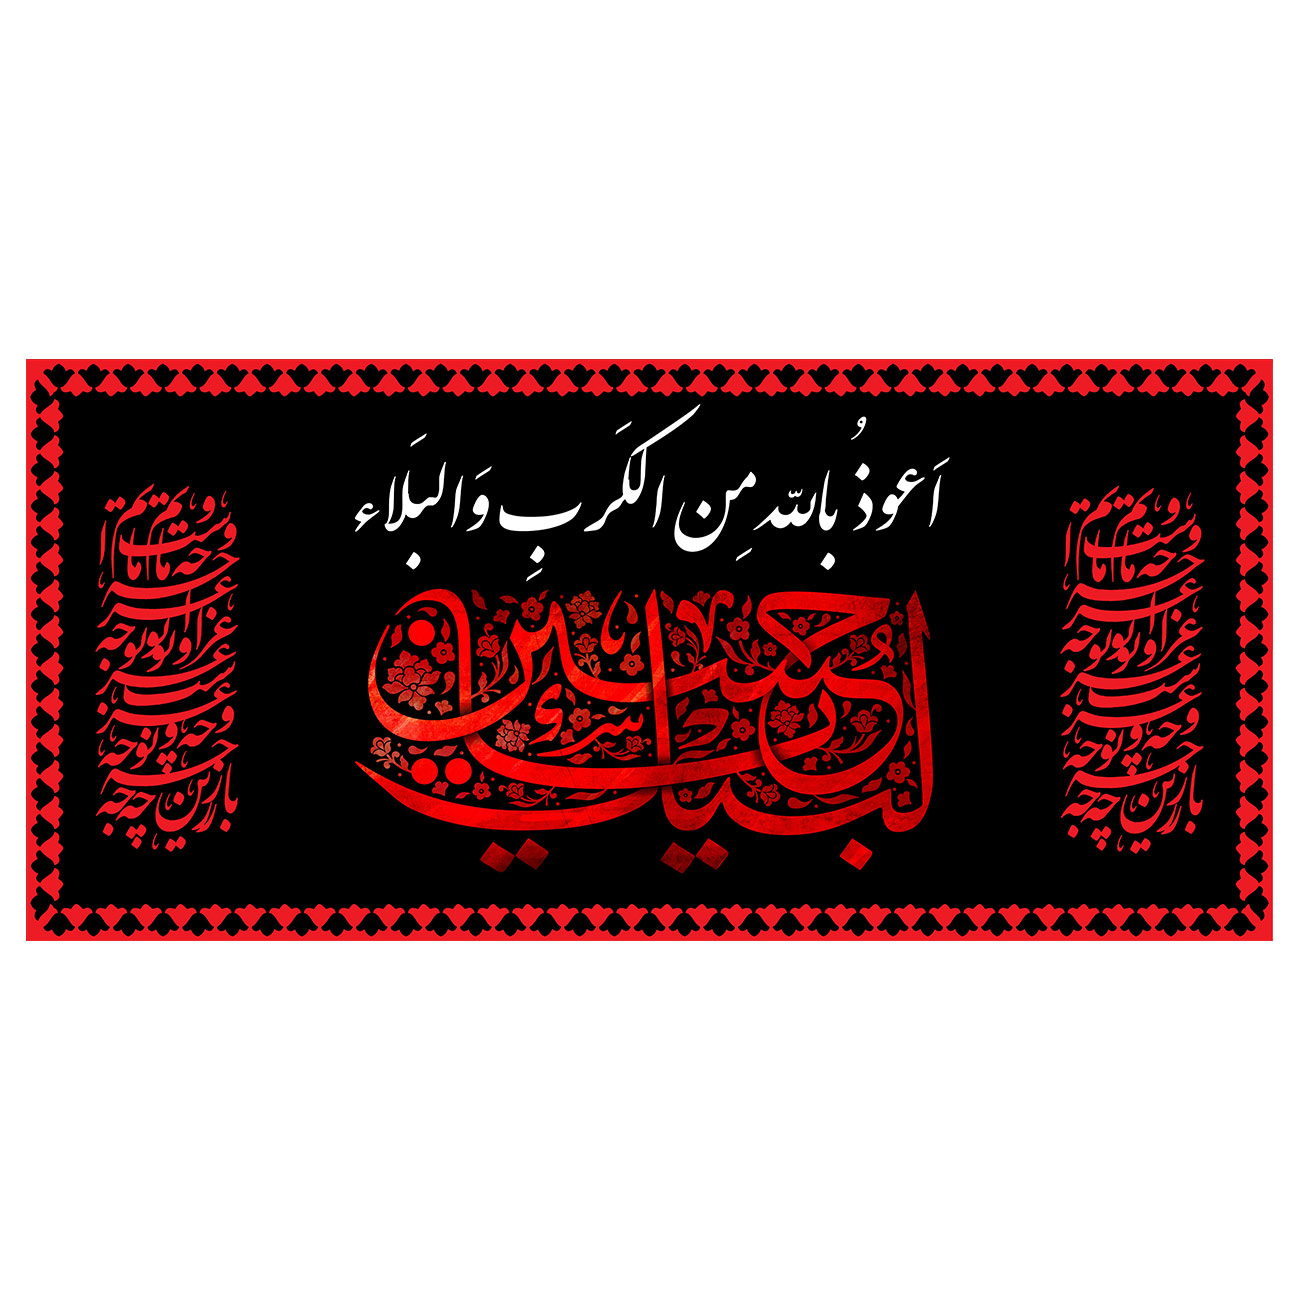 پرچم طرح شهادت مدل لبیک یا حسین کد 2291H